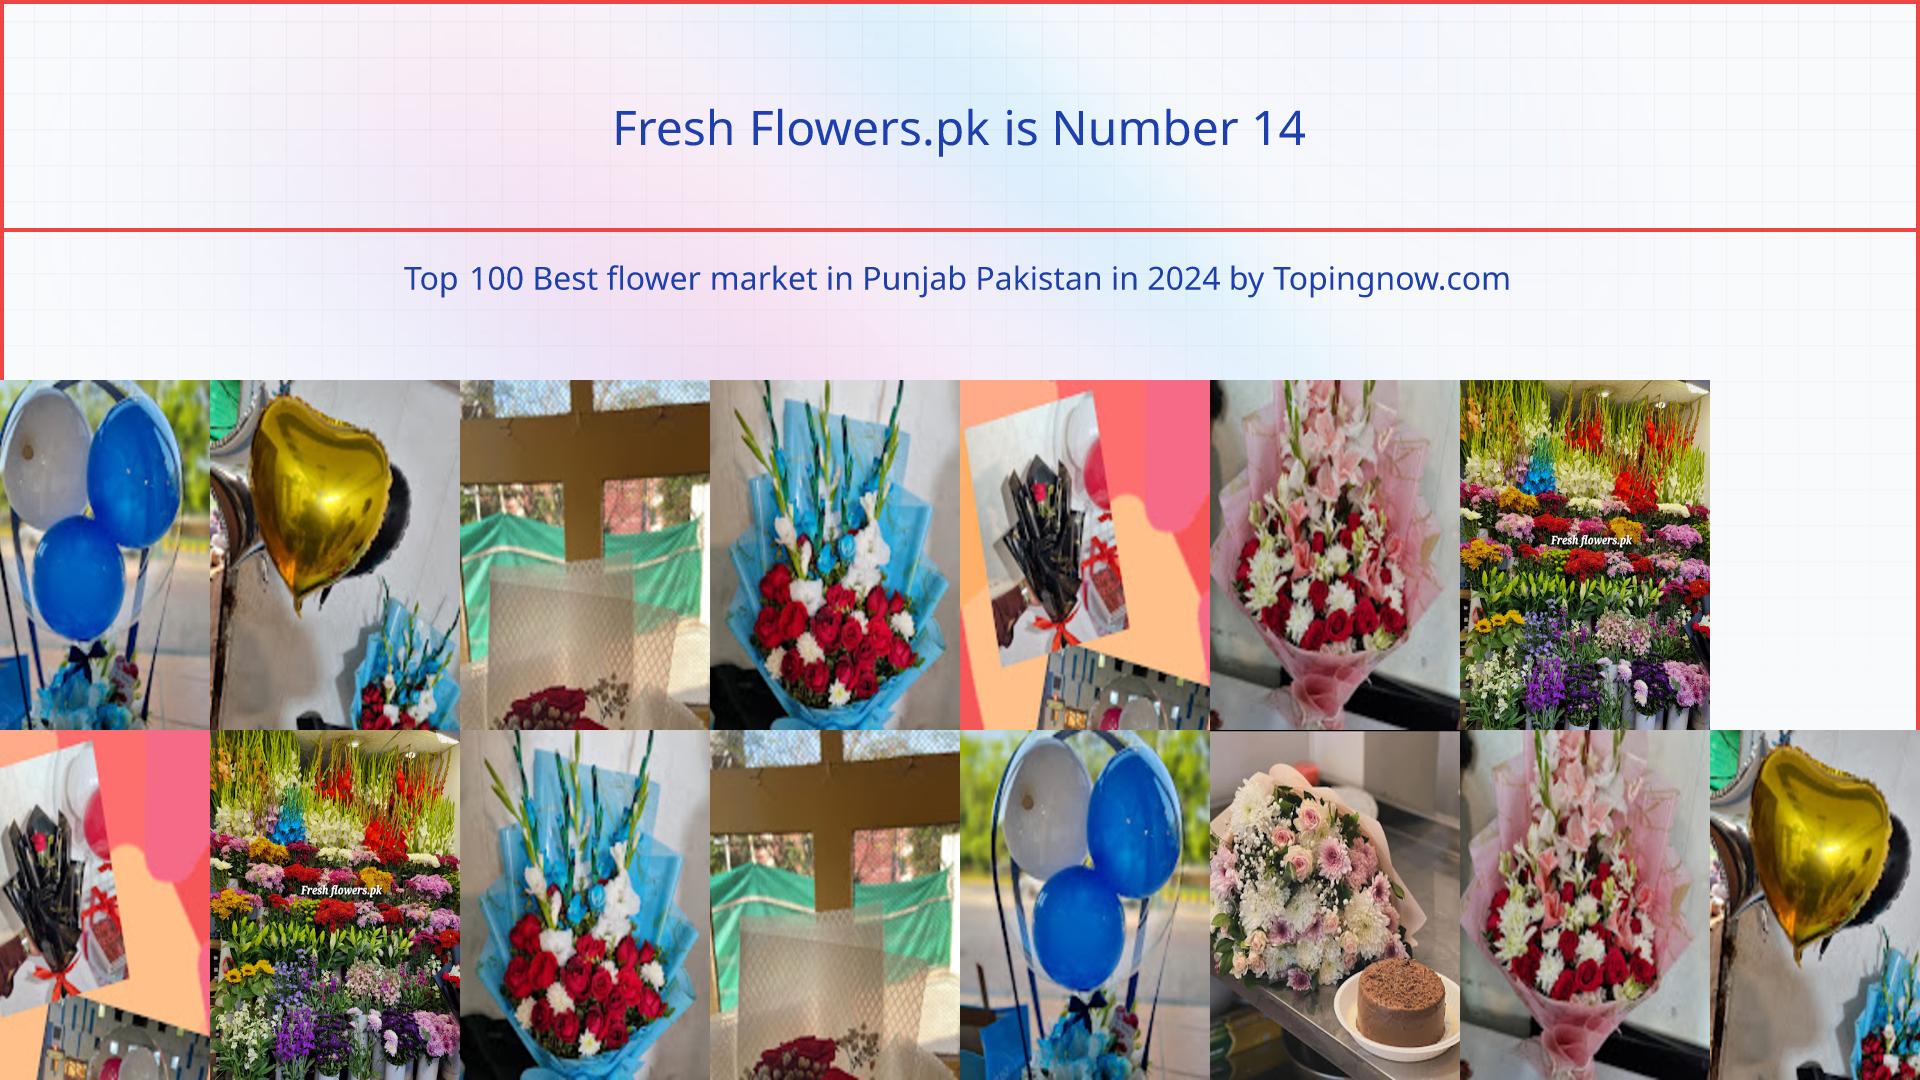 Fresh Flowers.pk: Top 100 Best flower market in Punjab Pakistan in 2024